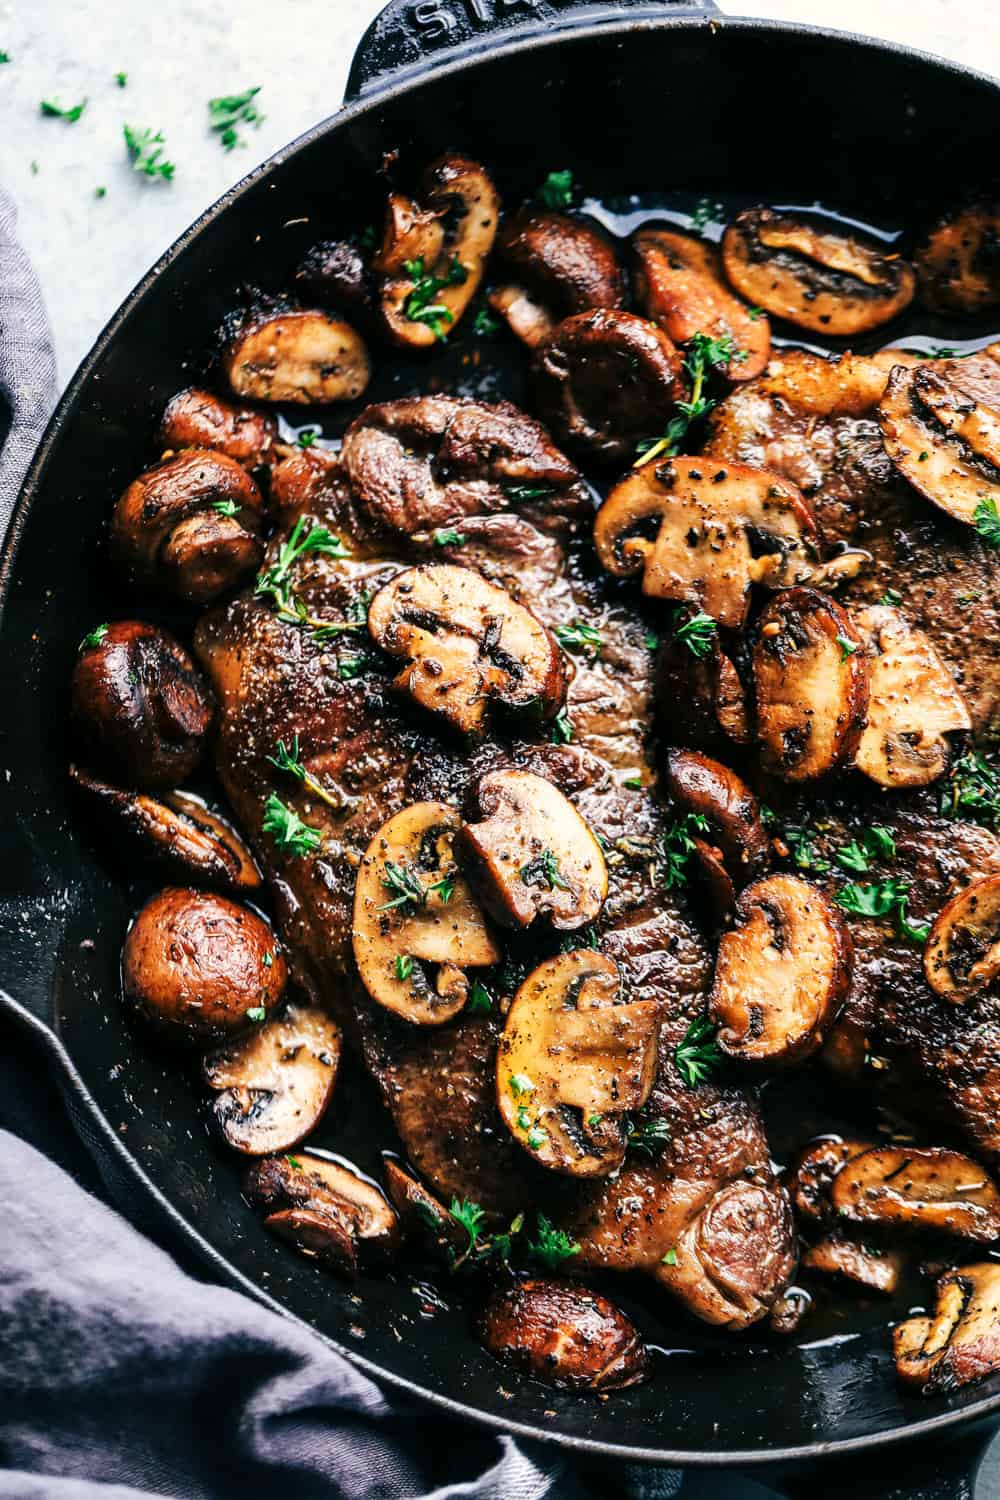 Garlic Butter Herb Steak and Mushrooms | The Recipe Critic